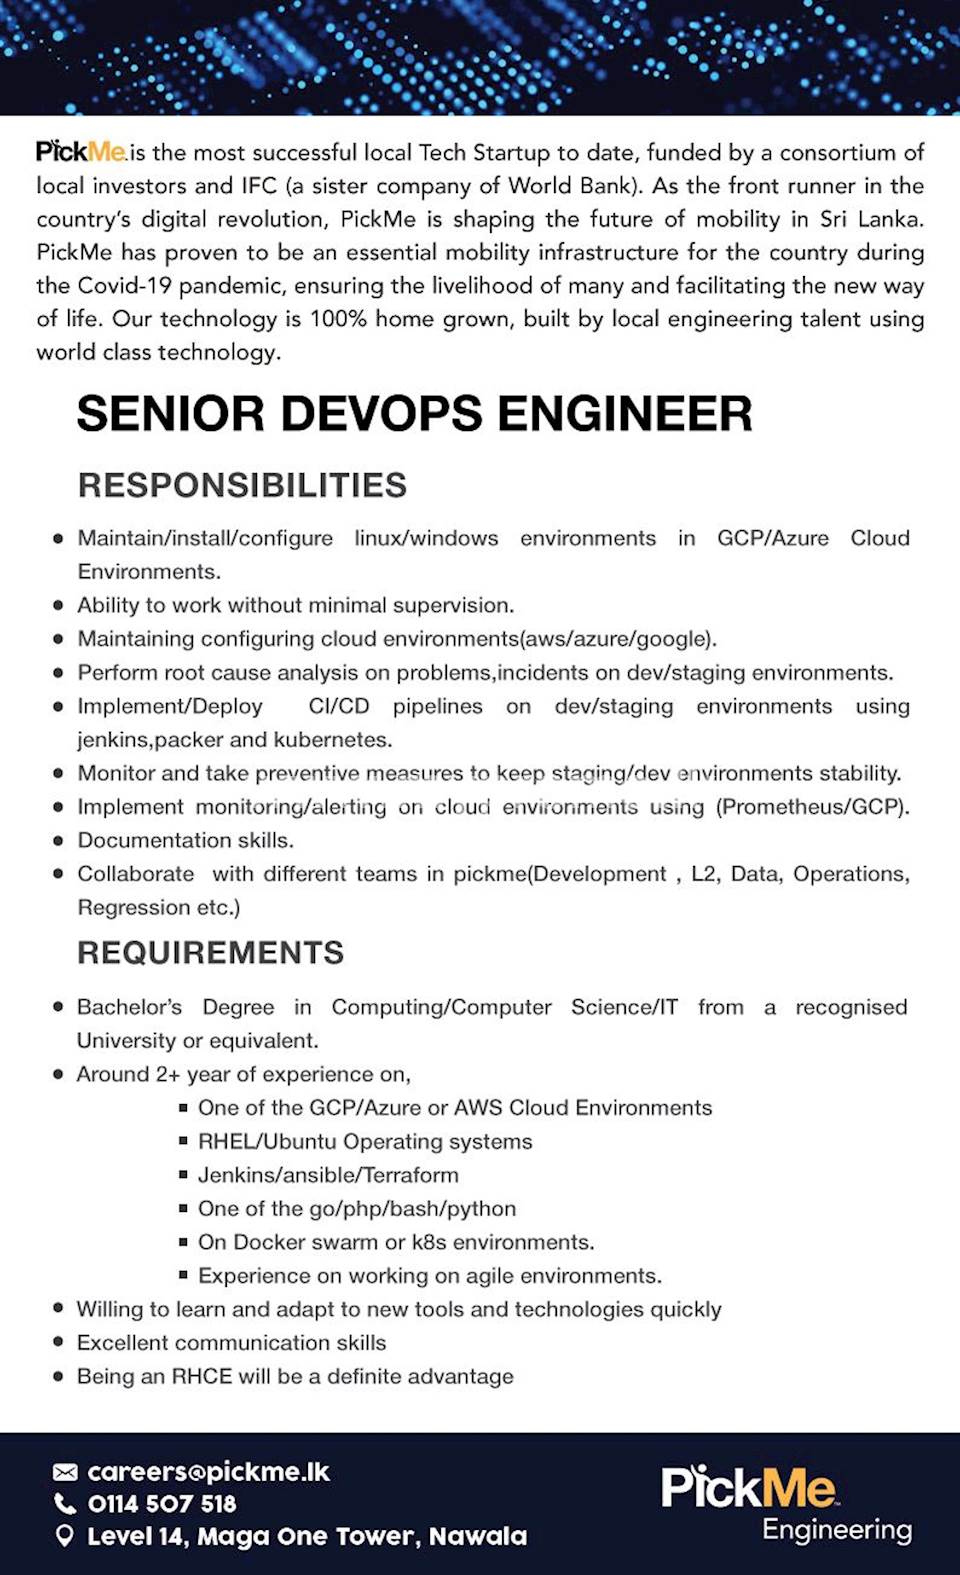 Senior Devops Engineer